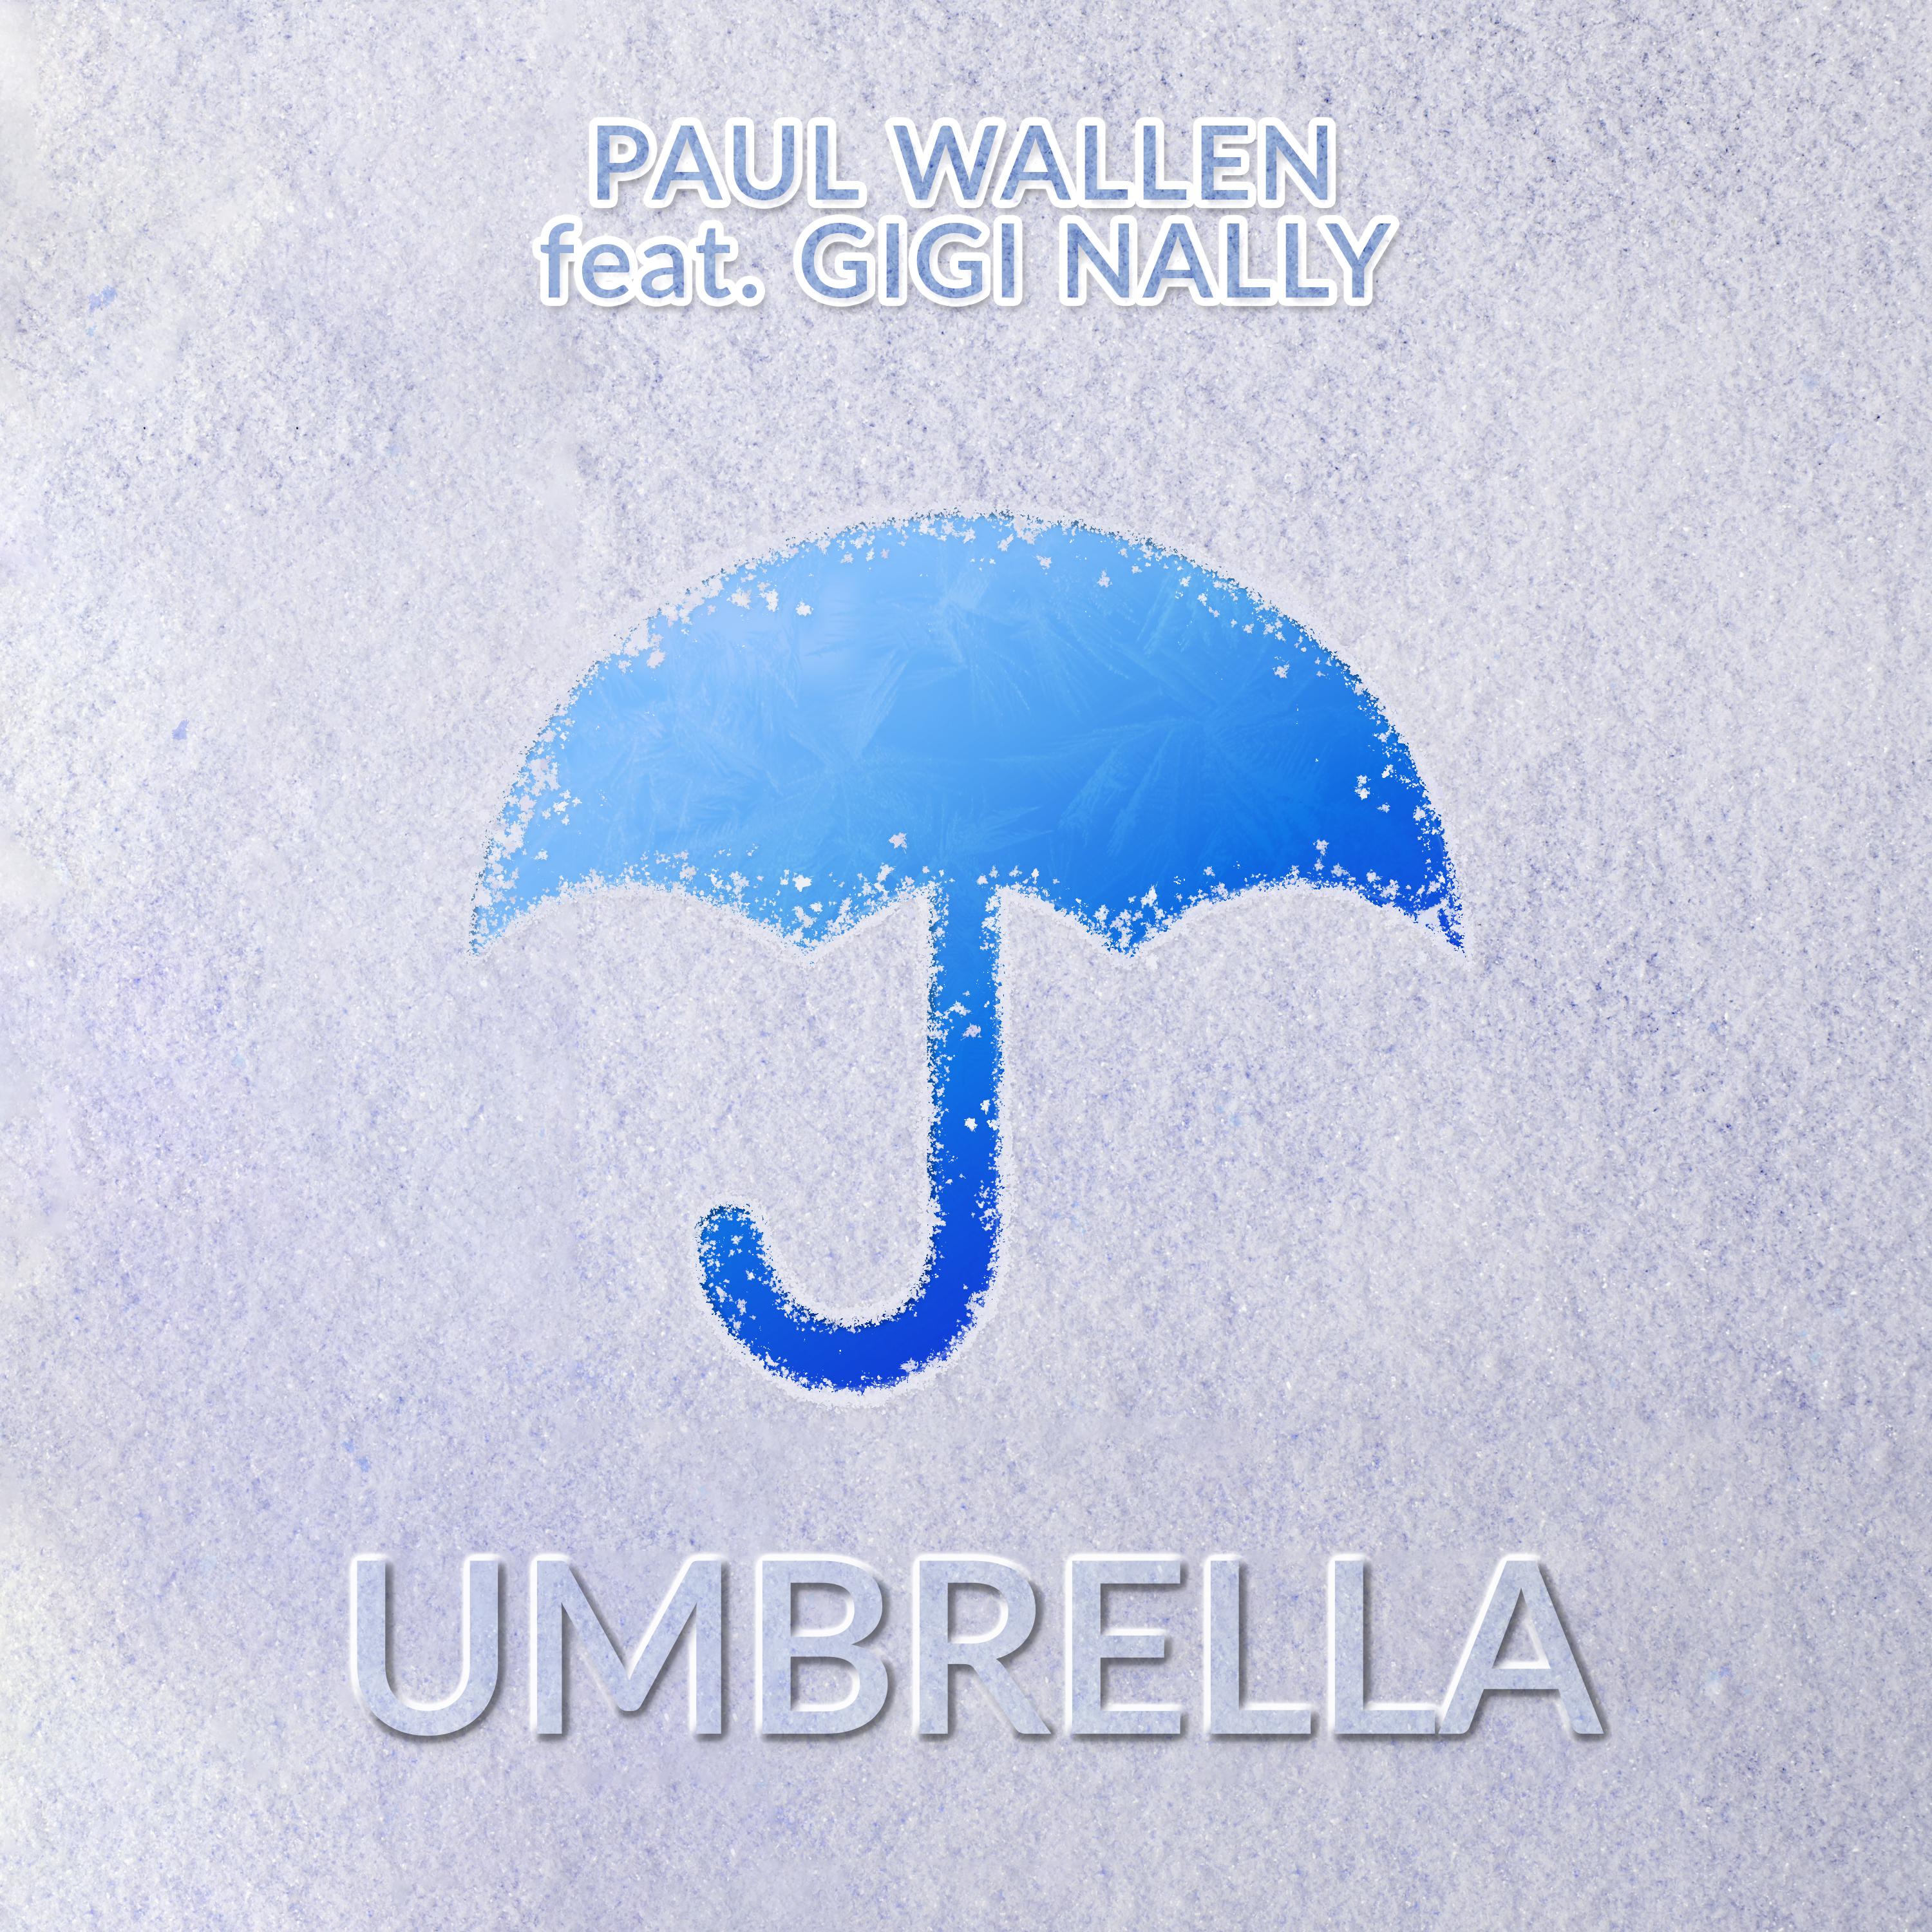 Umbrella paul wallen. Обложка Umbrella Paul Wallen. Paul Wallen feat. Gigi Nally Umbrella обложка. Gigi Nelly.